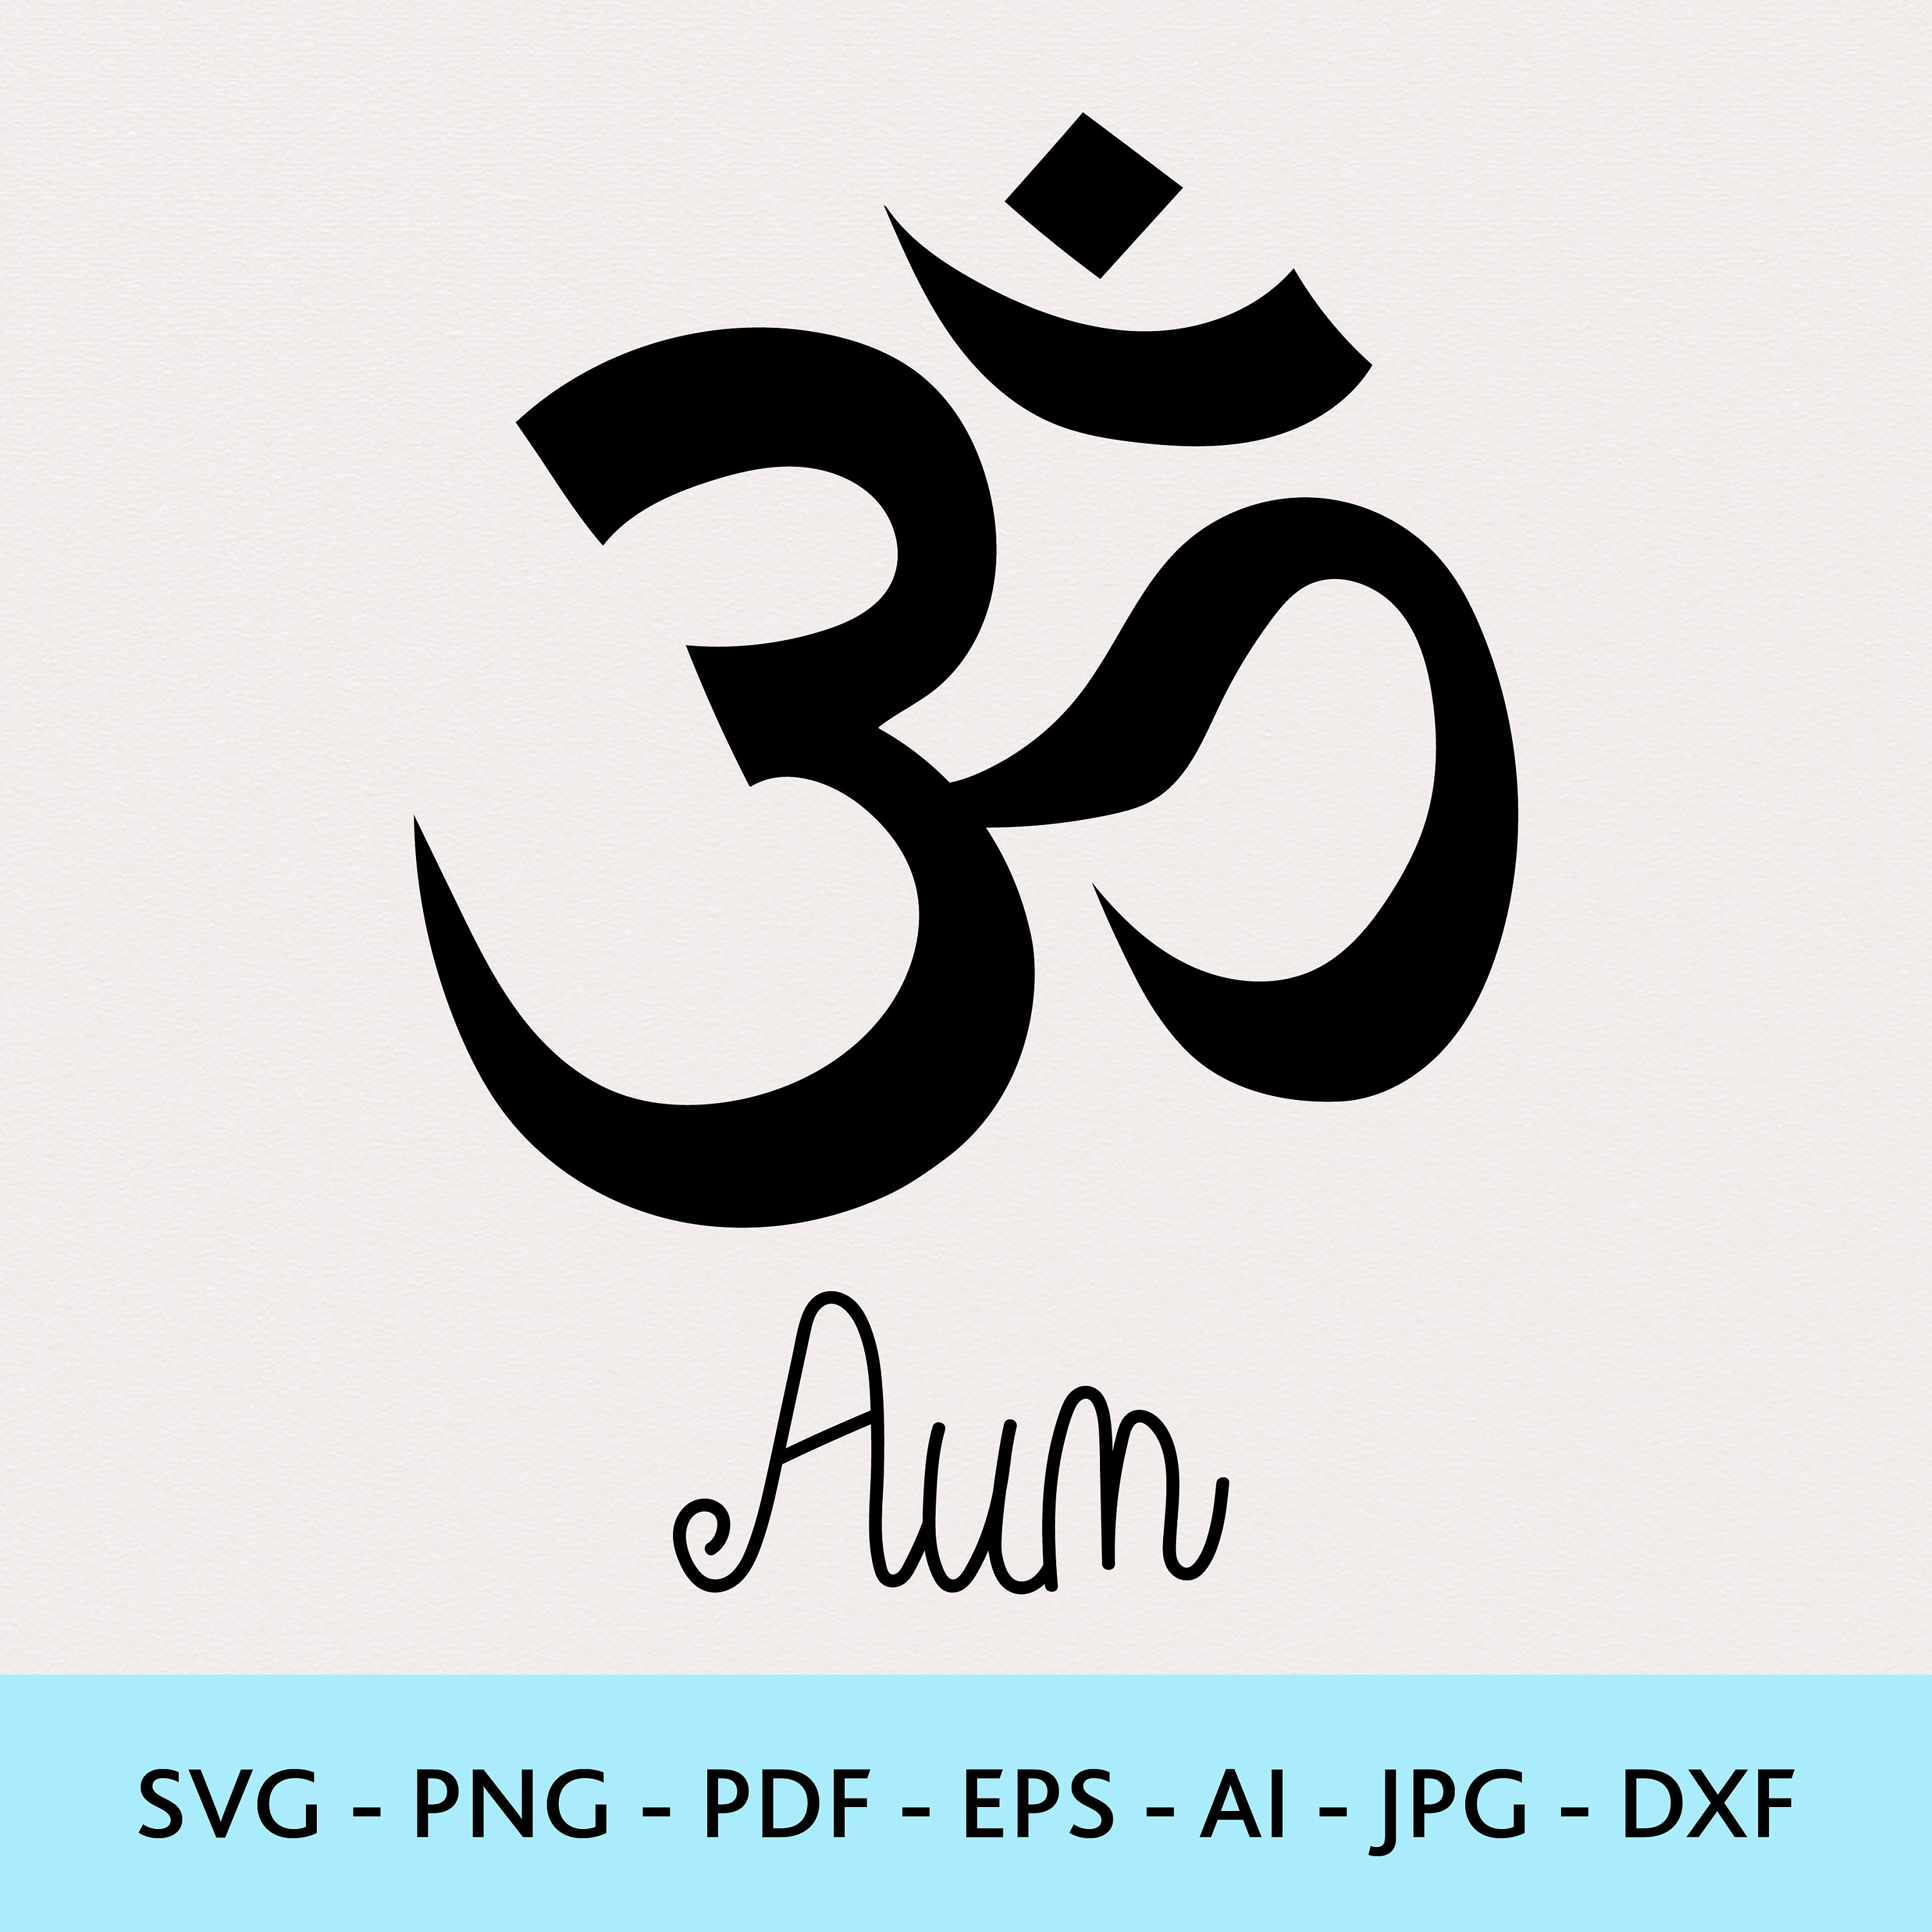 Om Symbol Svg, Hinduism Symbol Svg, Yoga Symbol Svg, Religion Svg, Cut File  PNG DXF. -  Canada